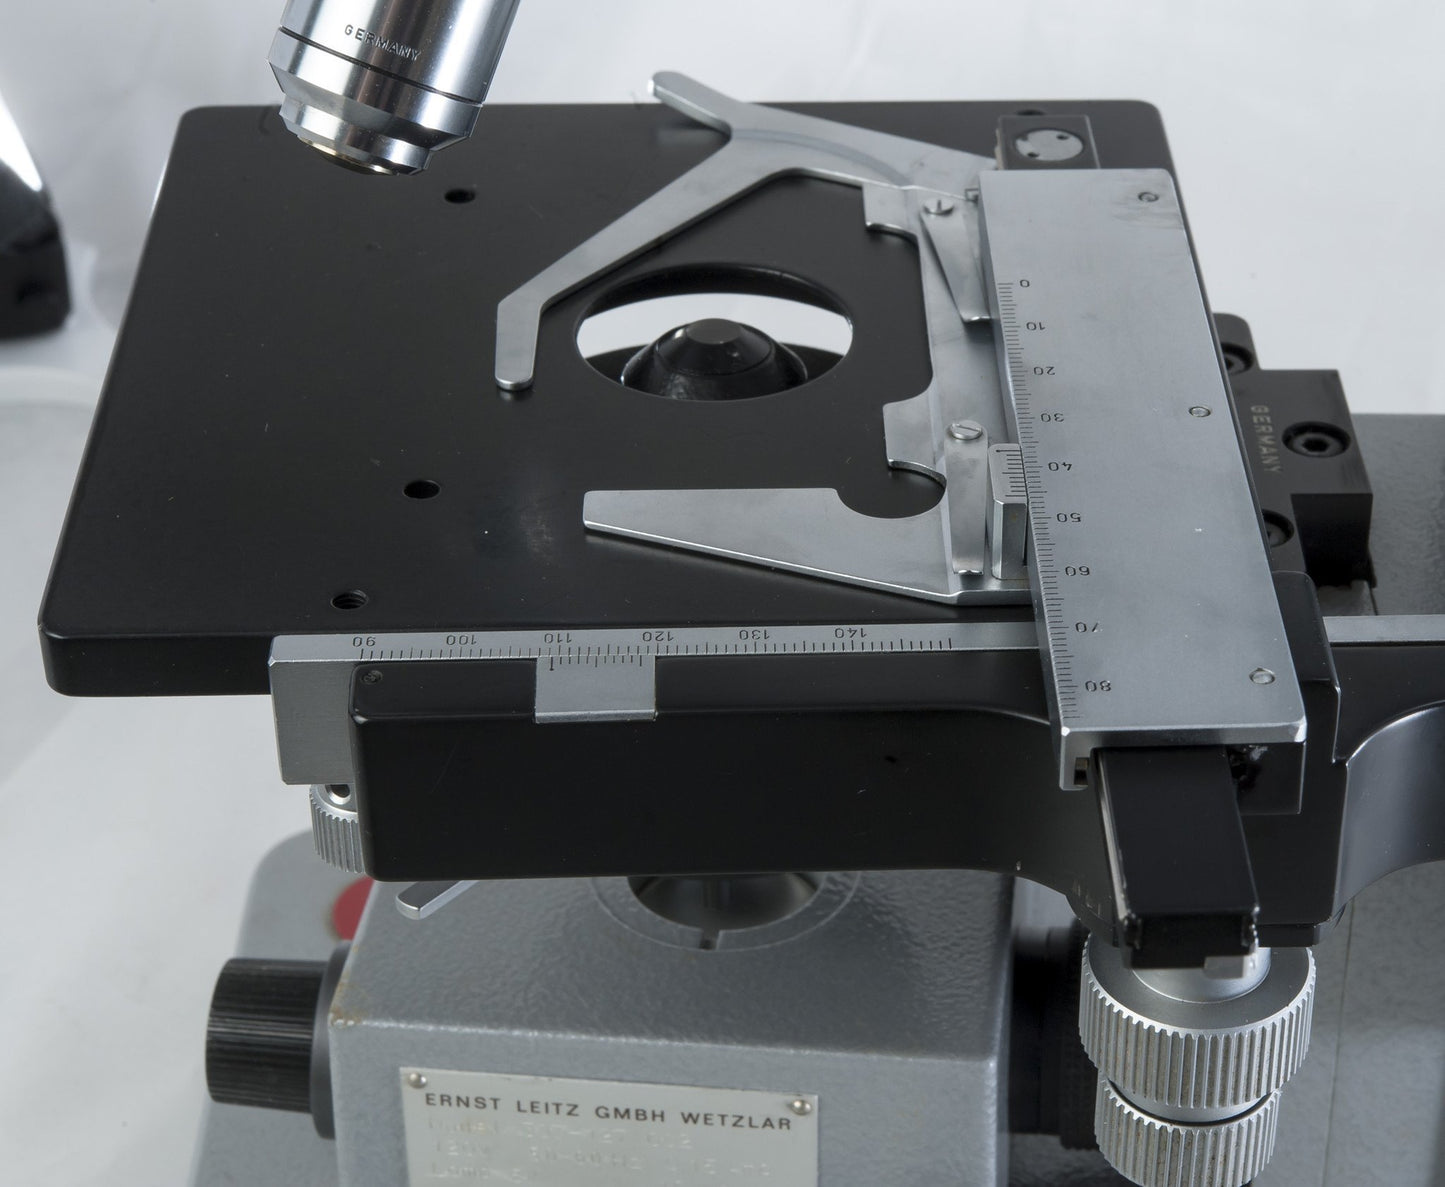 Leitz HM-LUX Binocular Microscope - Microscope Central
 - 7